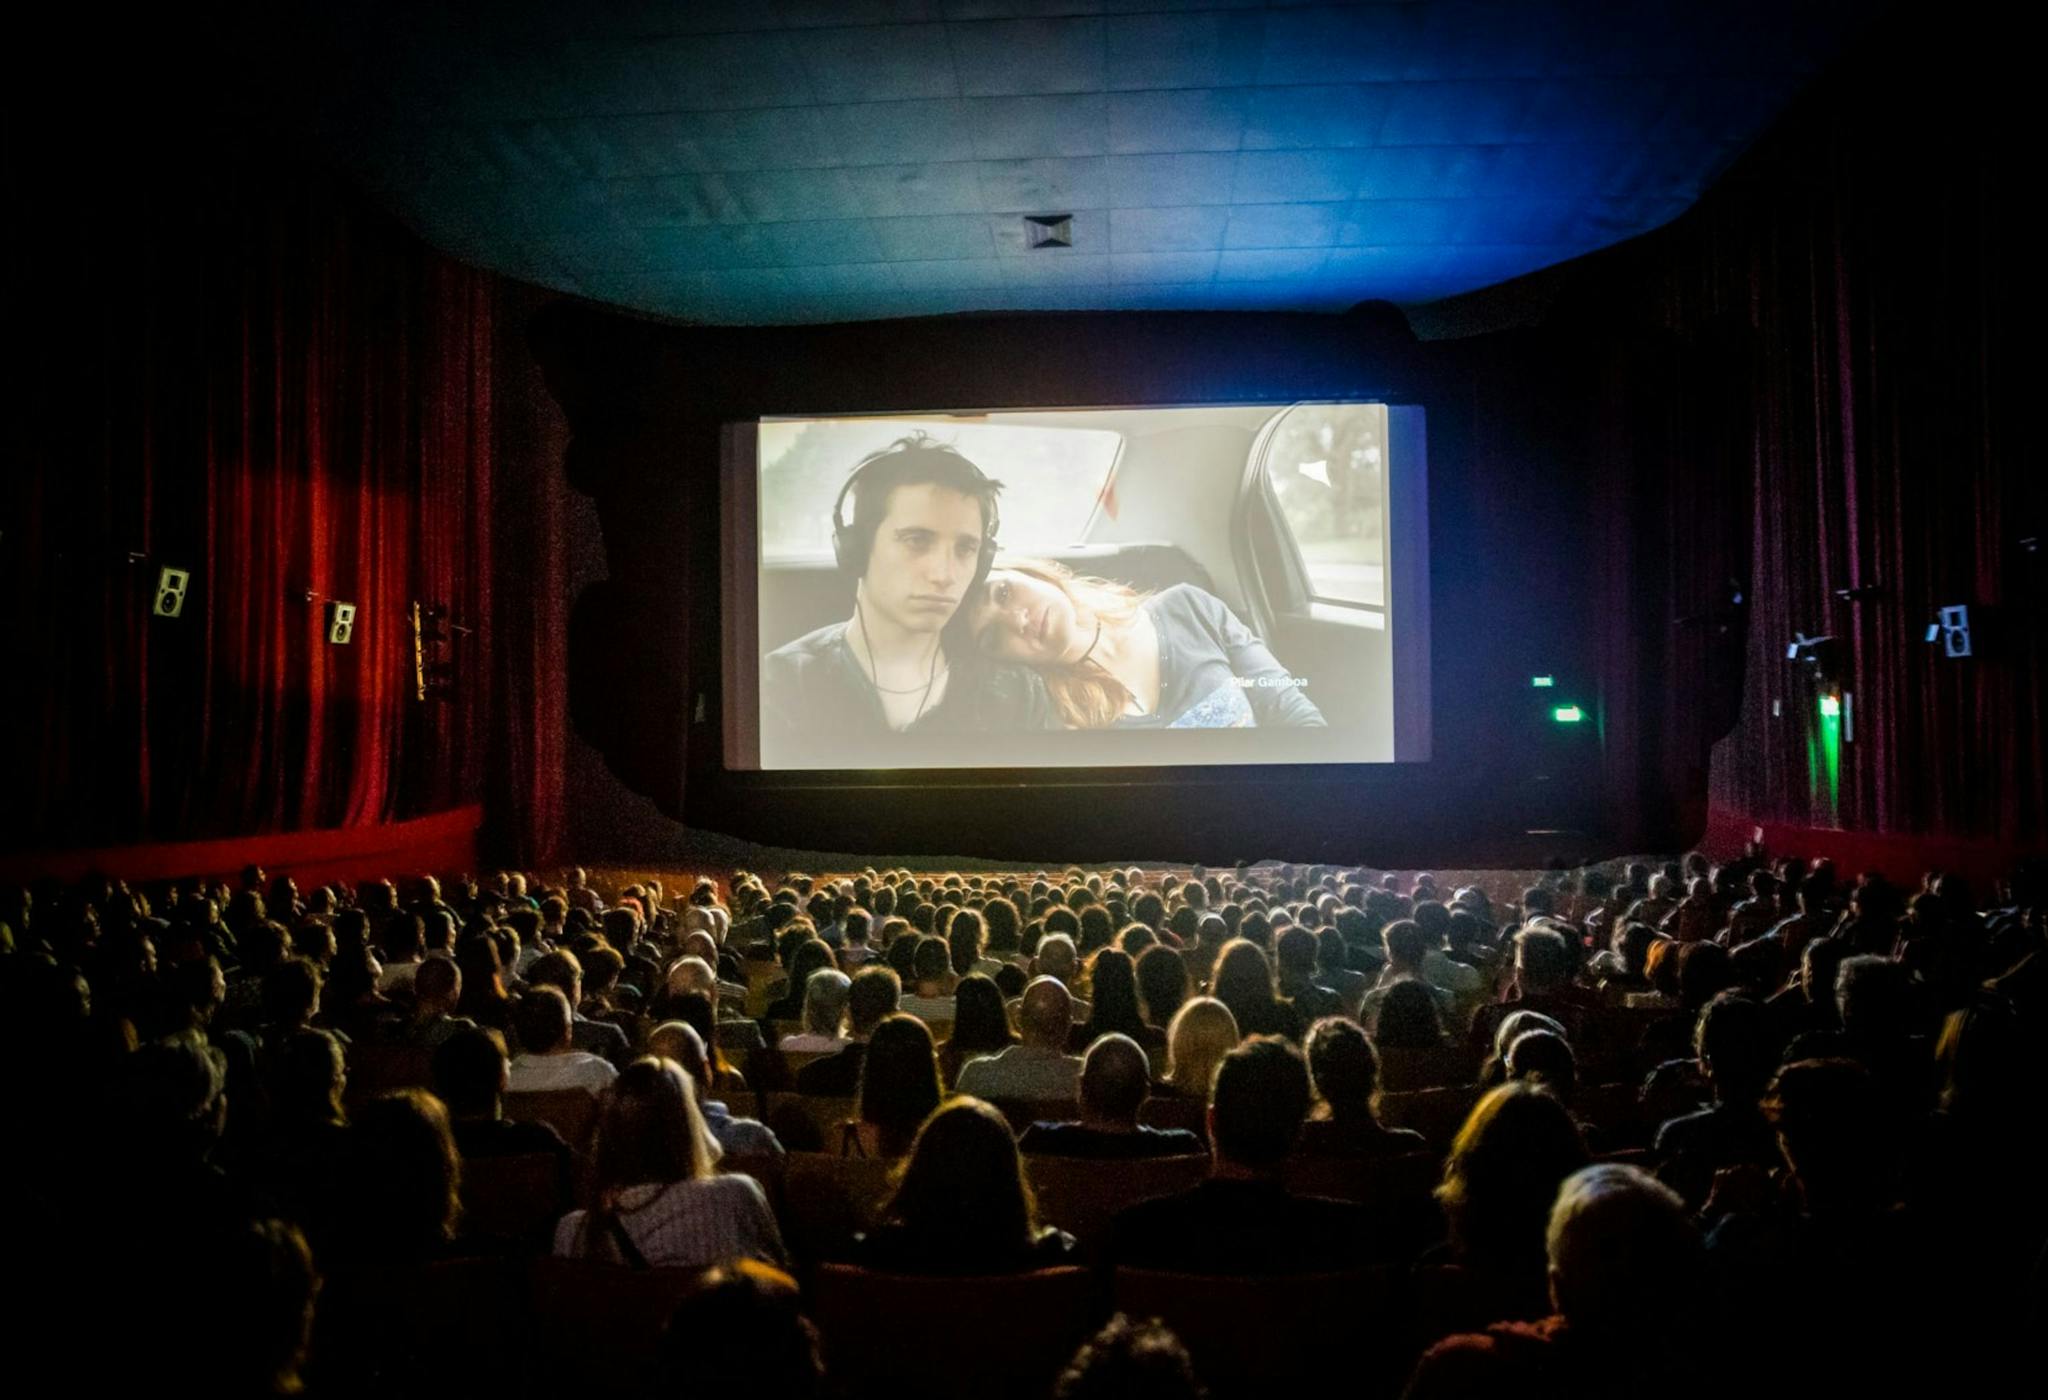 Cine de Buenos Aires durante la inauguración del Bafici